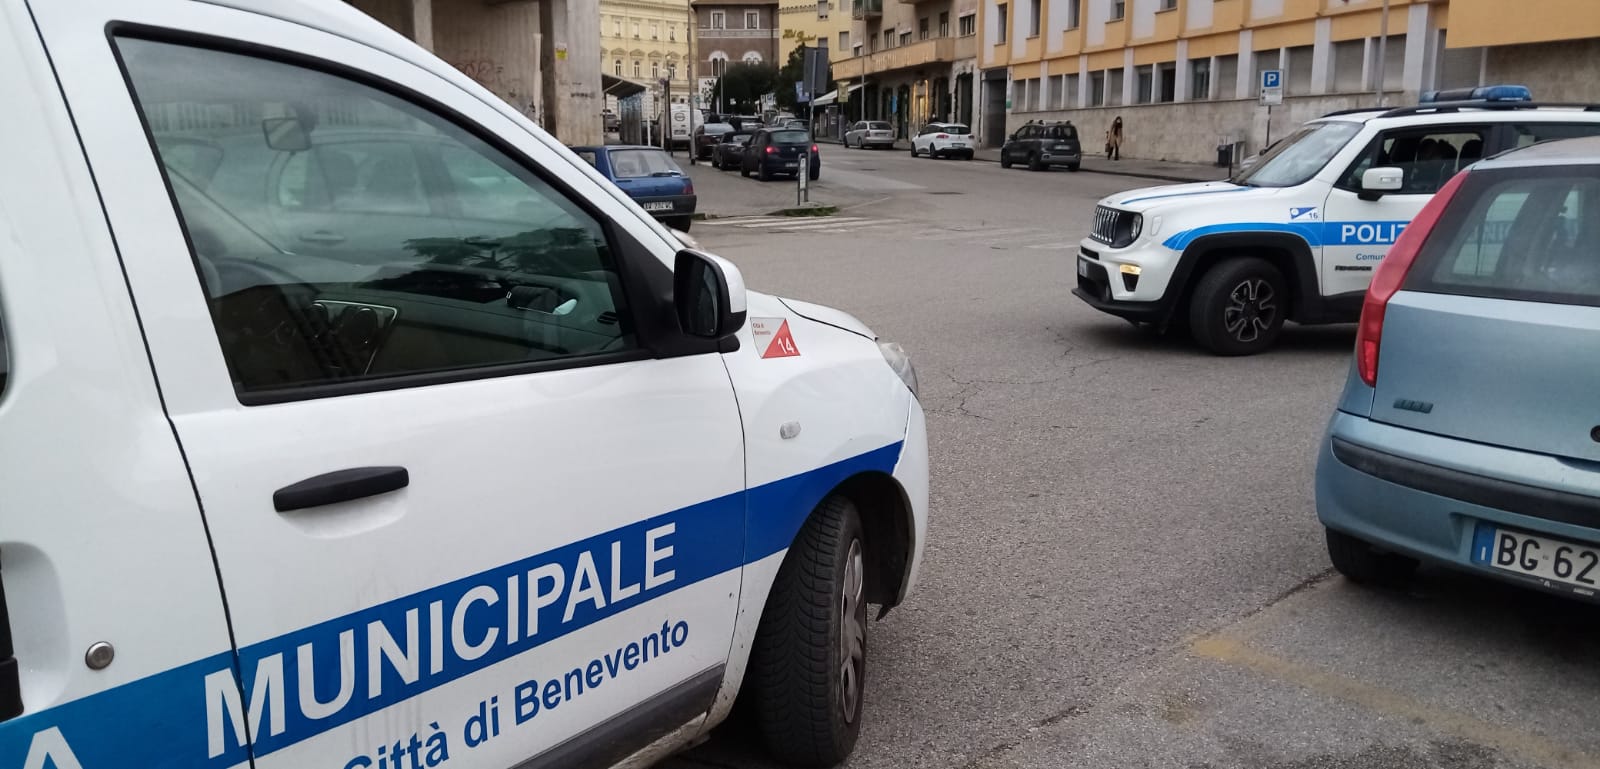 Benevento| Occupano alloggio ACER, denunciati due giovani